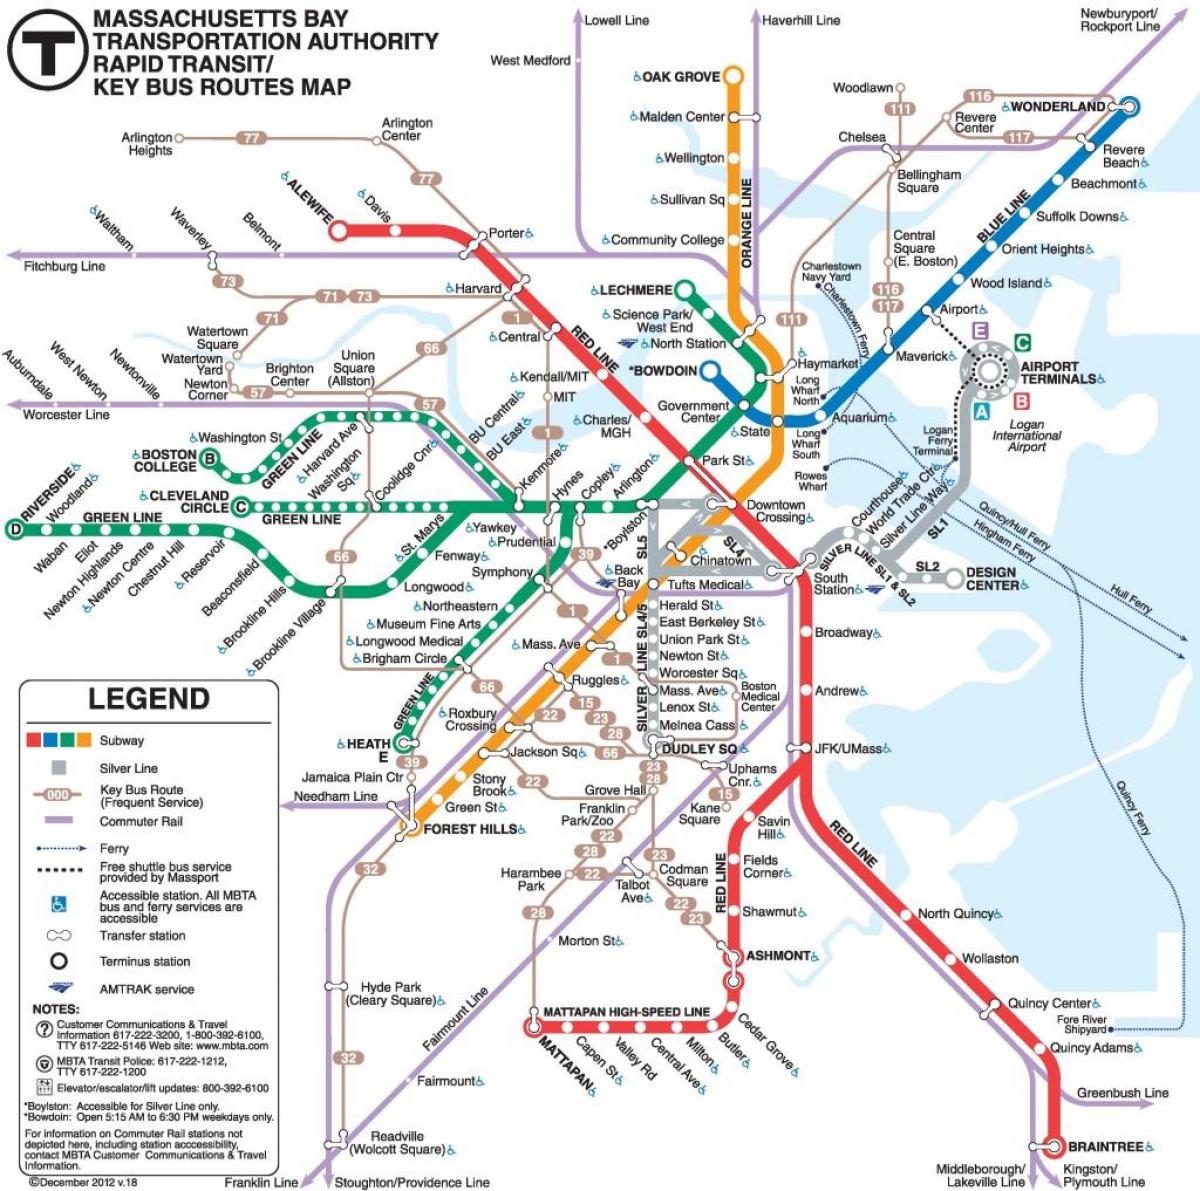 Filadelfia transporte público mapa